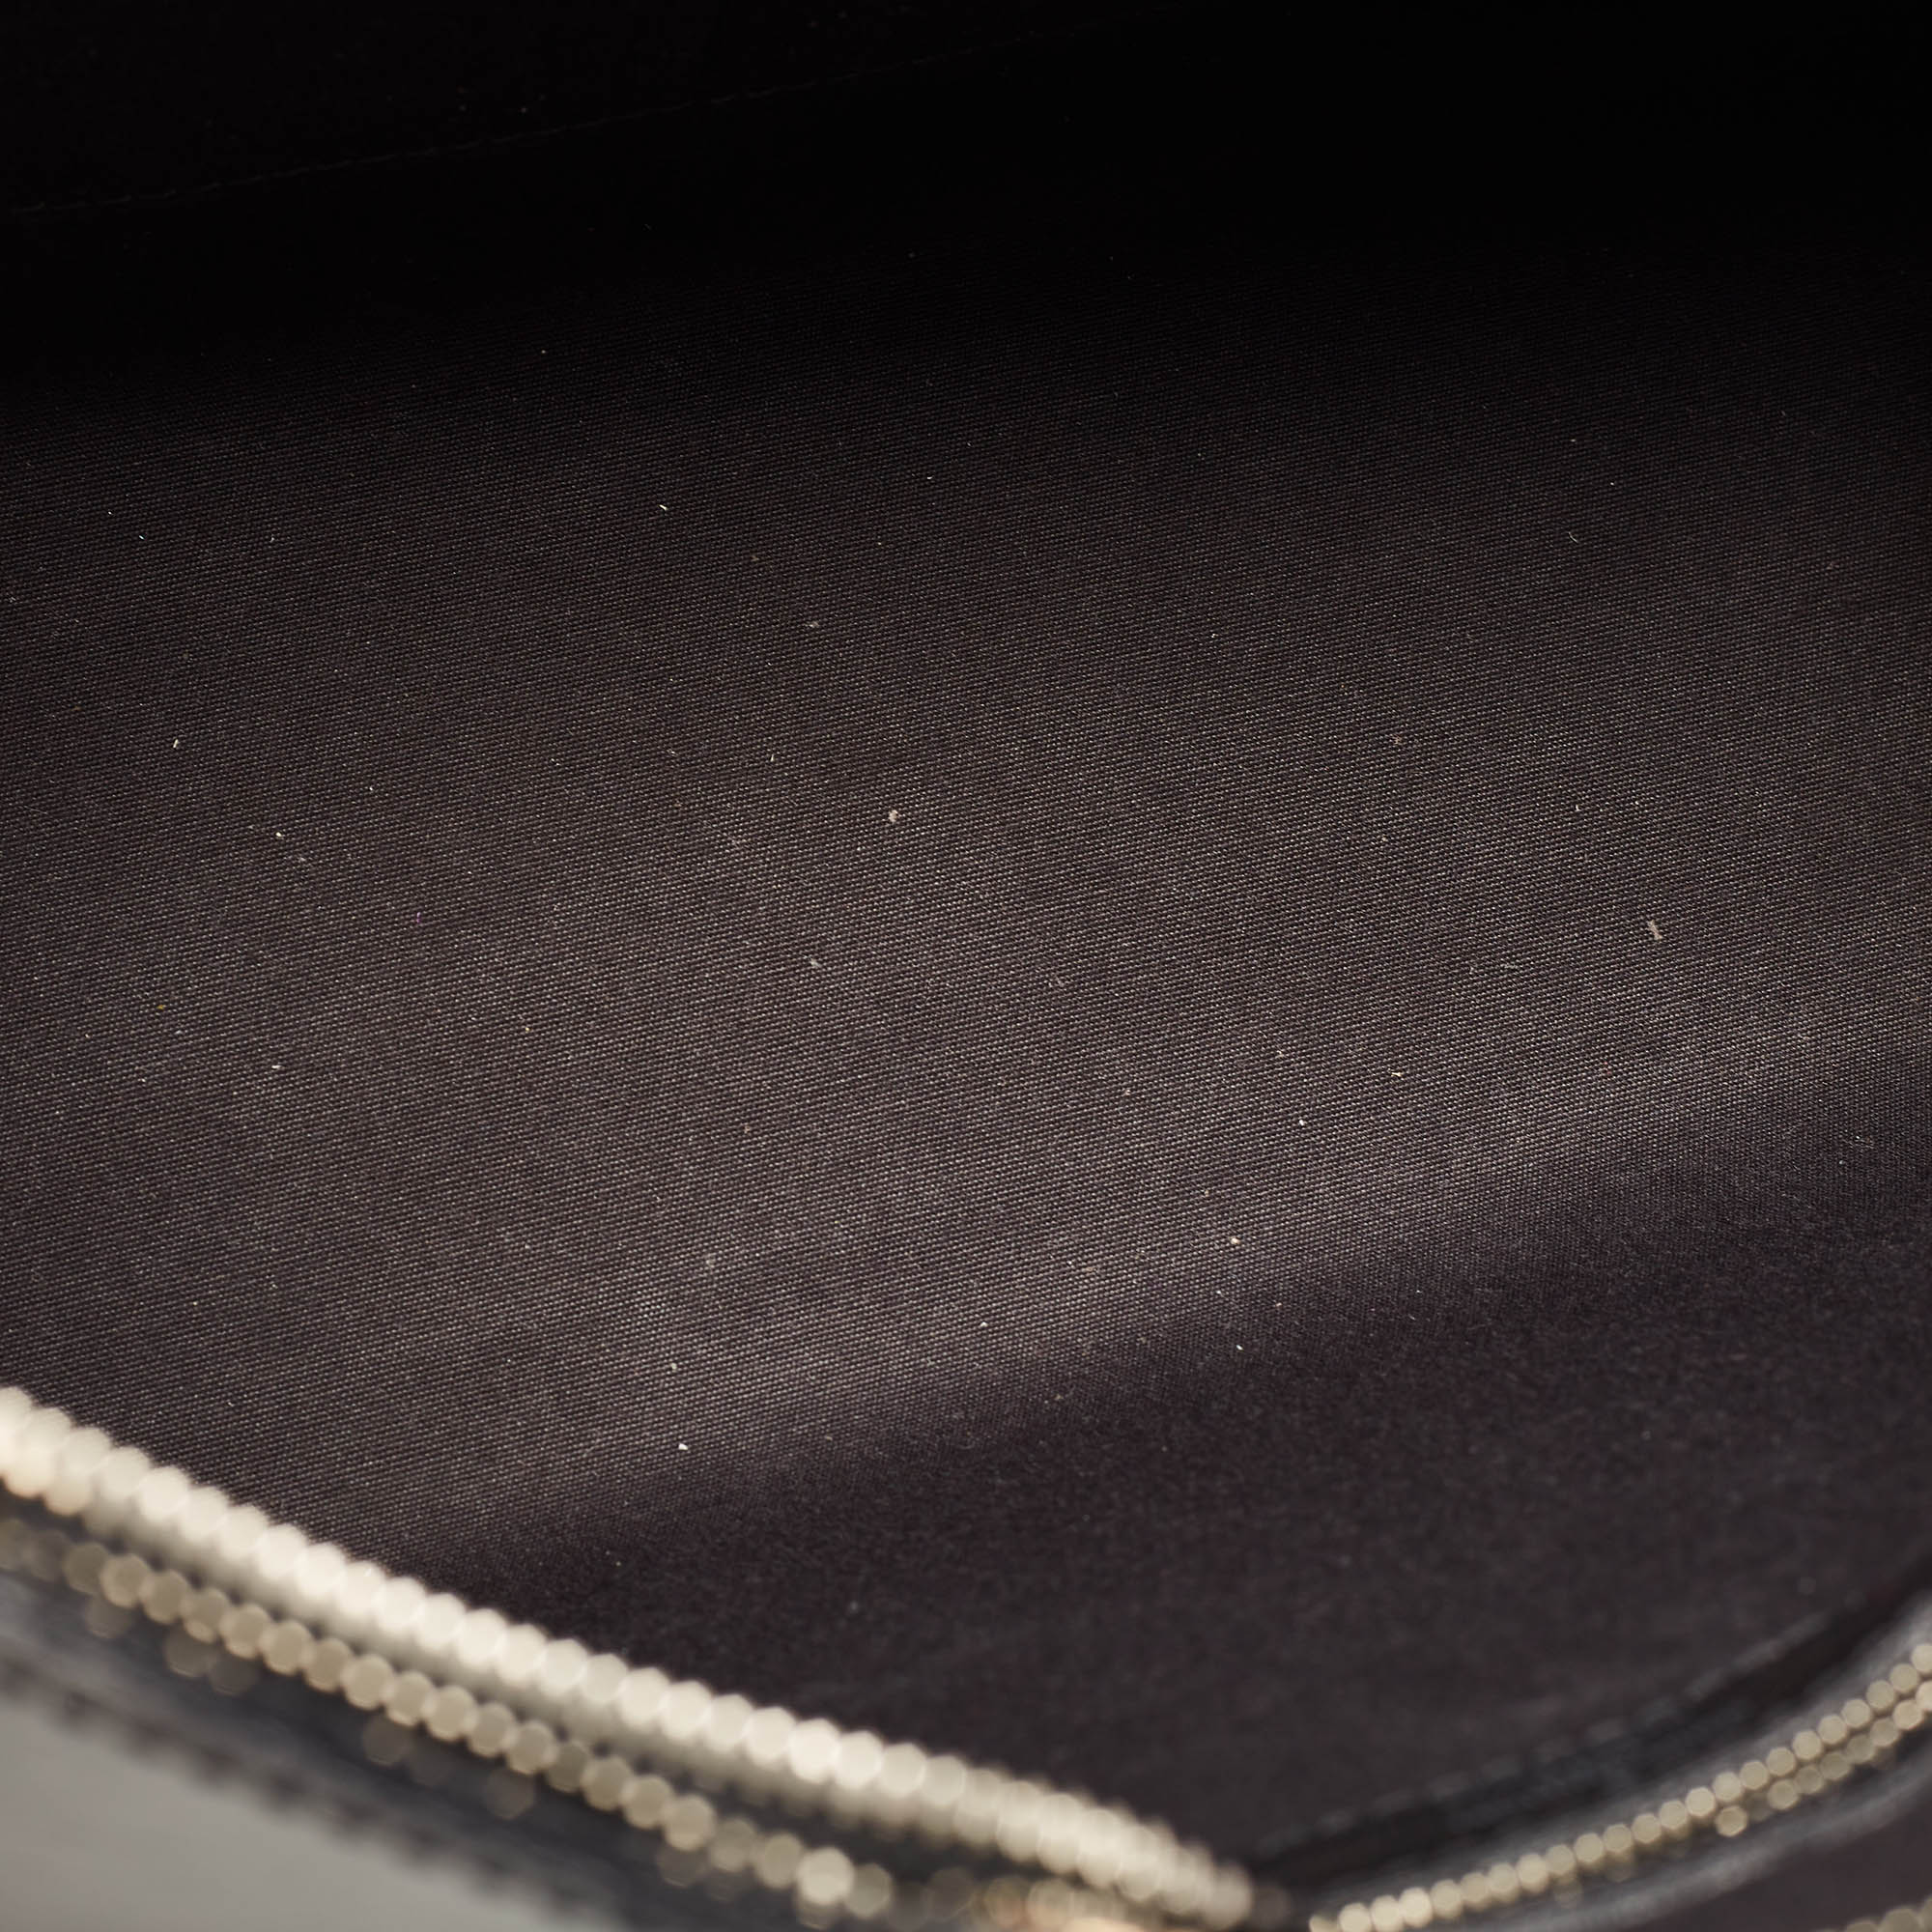 Louis Vuitton Black Electric Epi Leather Brea MM Bag